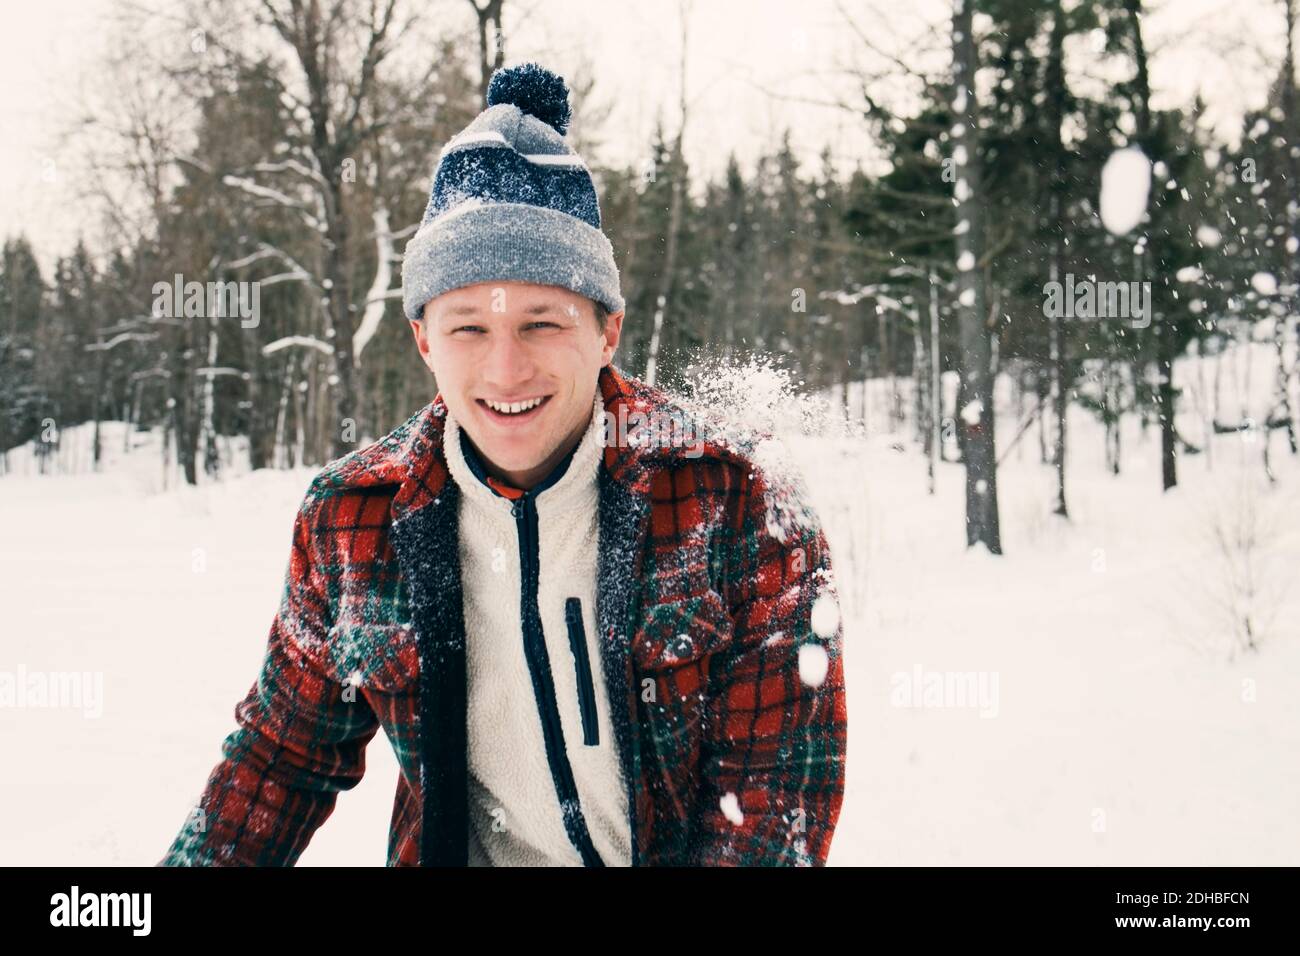 Portrait d'un homme mi-adulte heureux en vêtement chaud champ recouvert de neige Banque D'Images